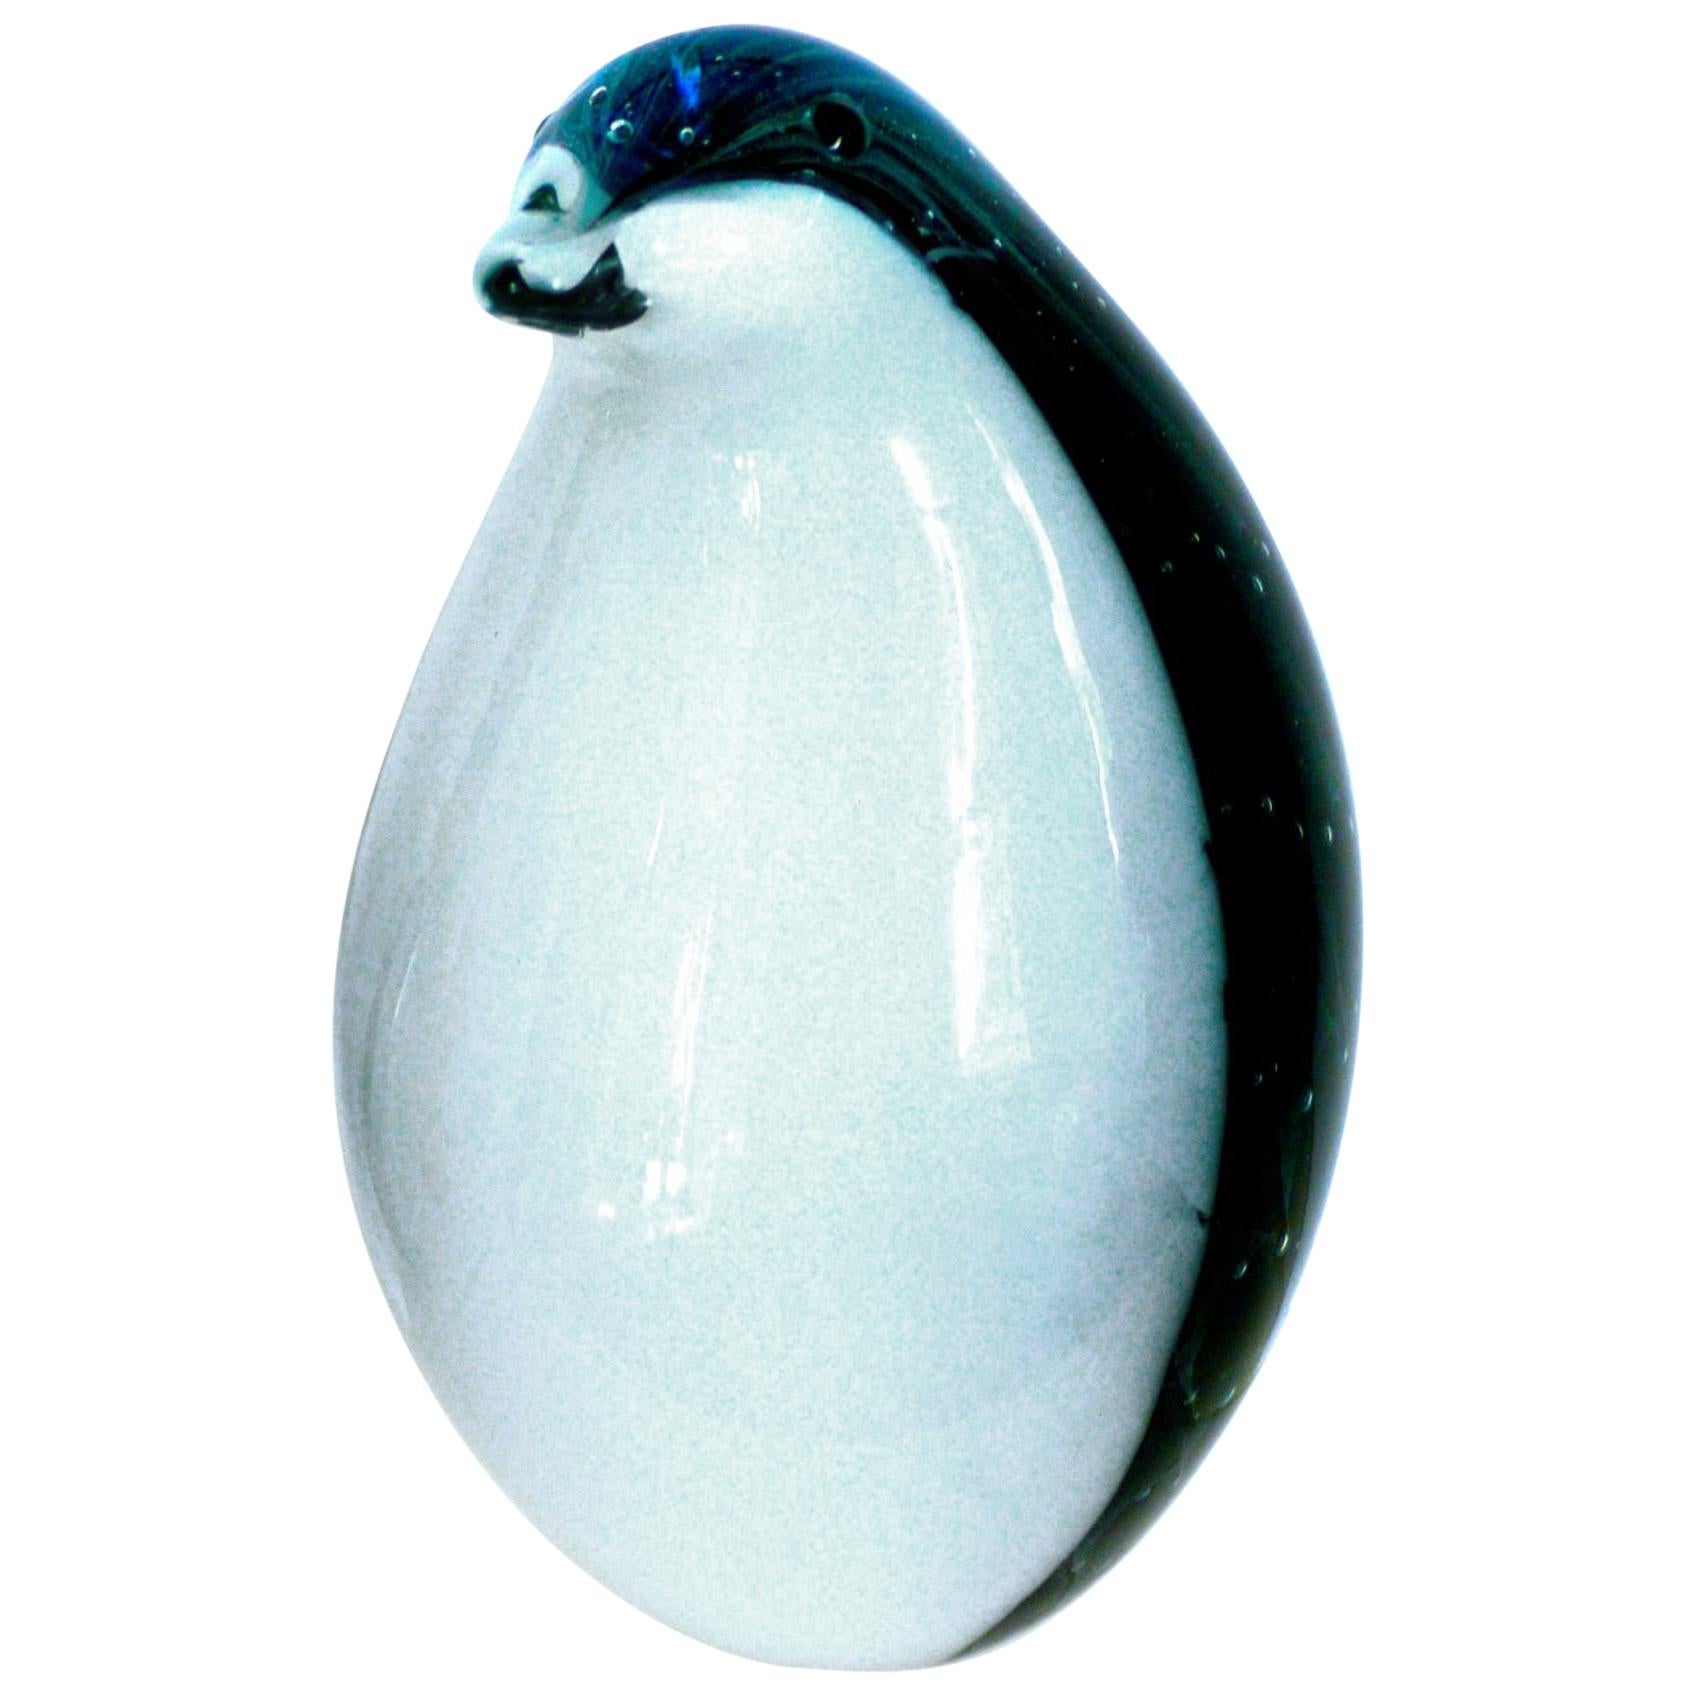 Murano Modernist Penguin Figurine Archimede Seguso Art Vitra 1969 Sommerso For Sale